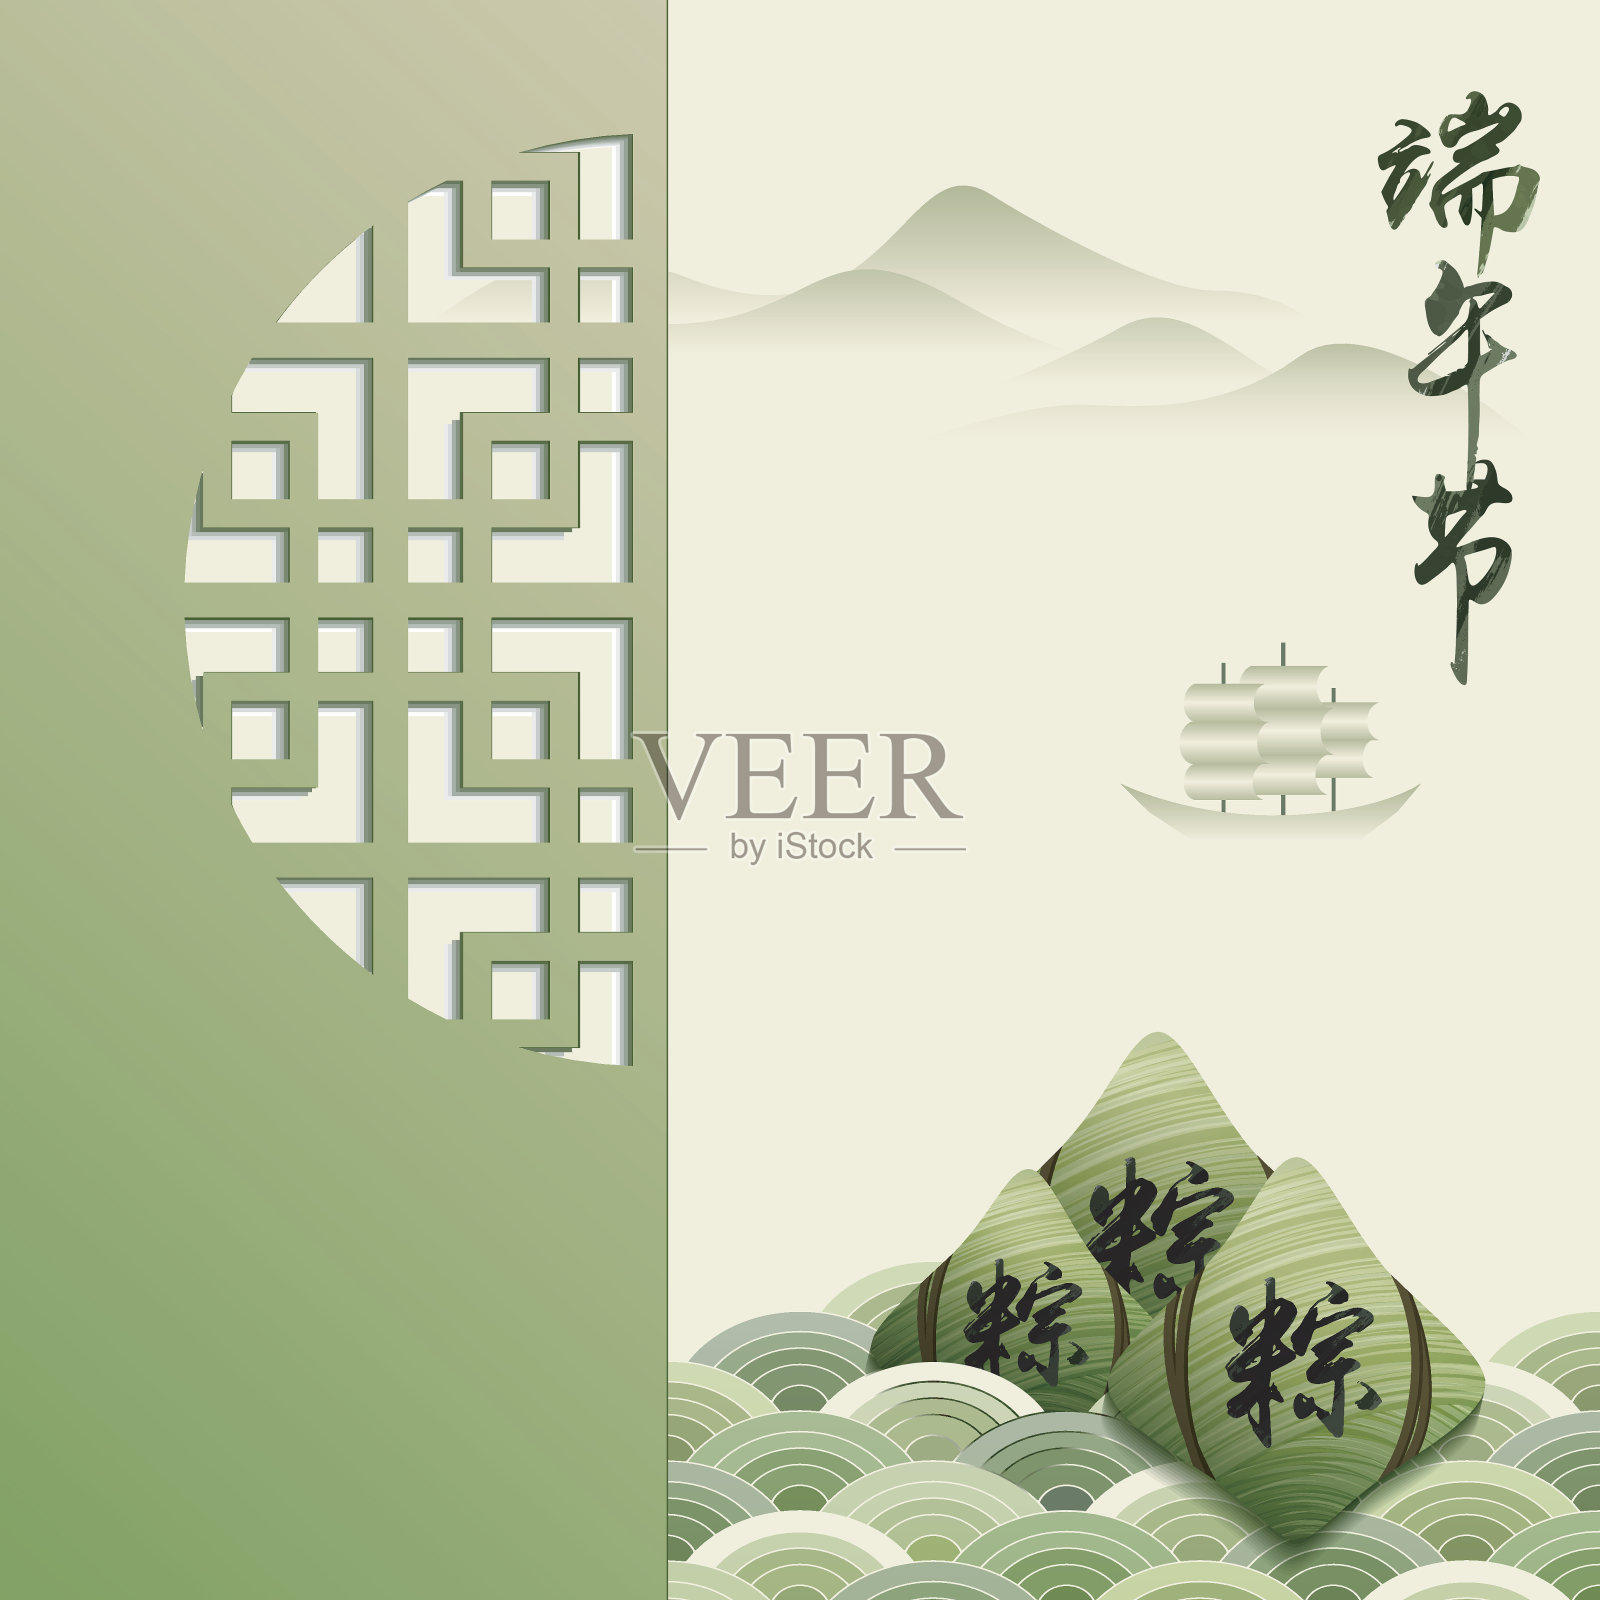 中国端午节的背景插画图片素材